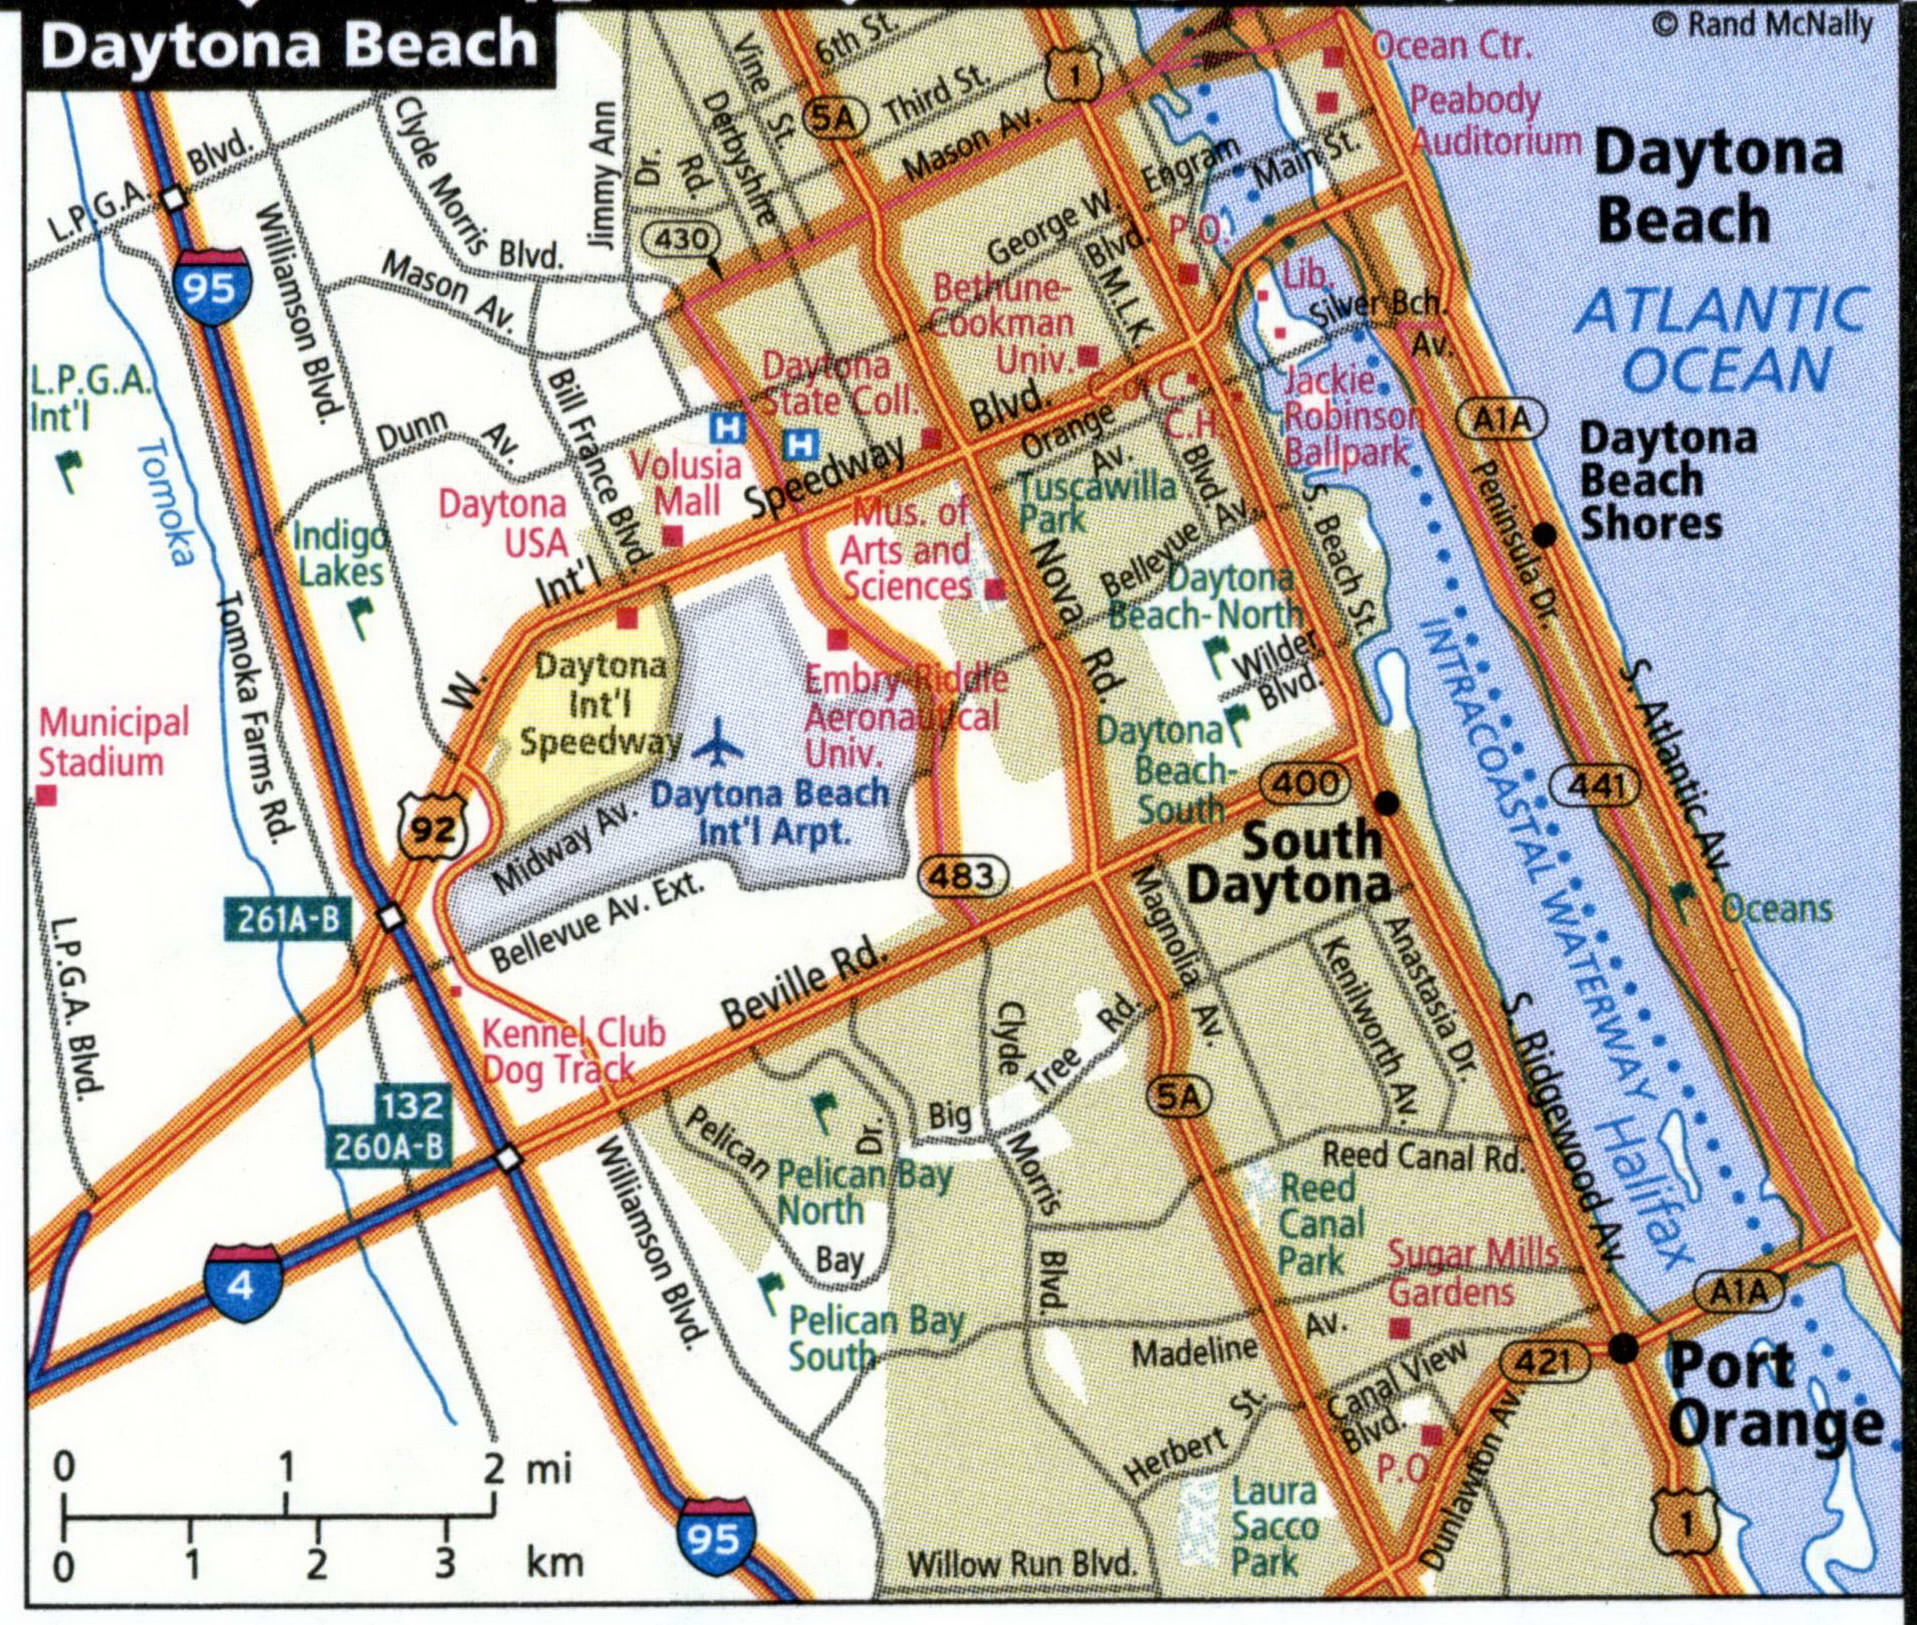 Daytona Beach map for truckers